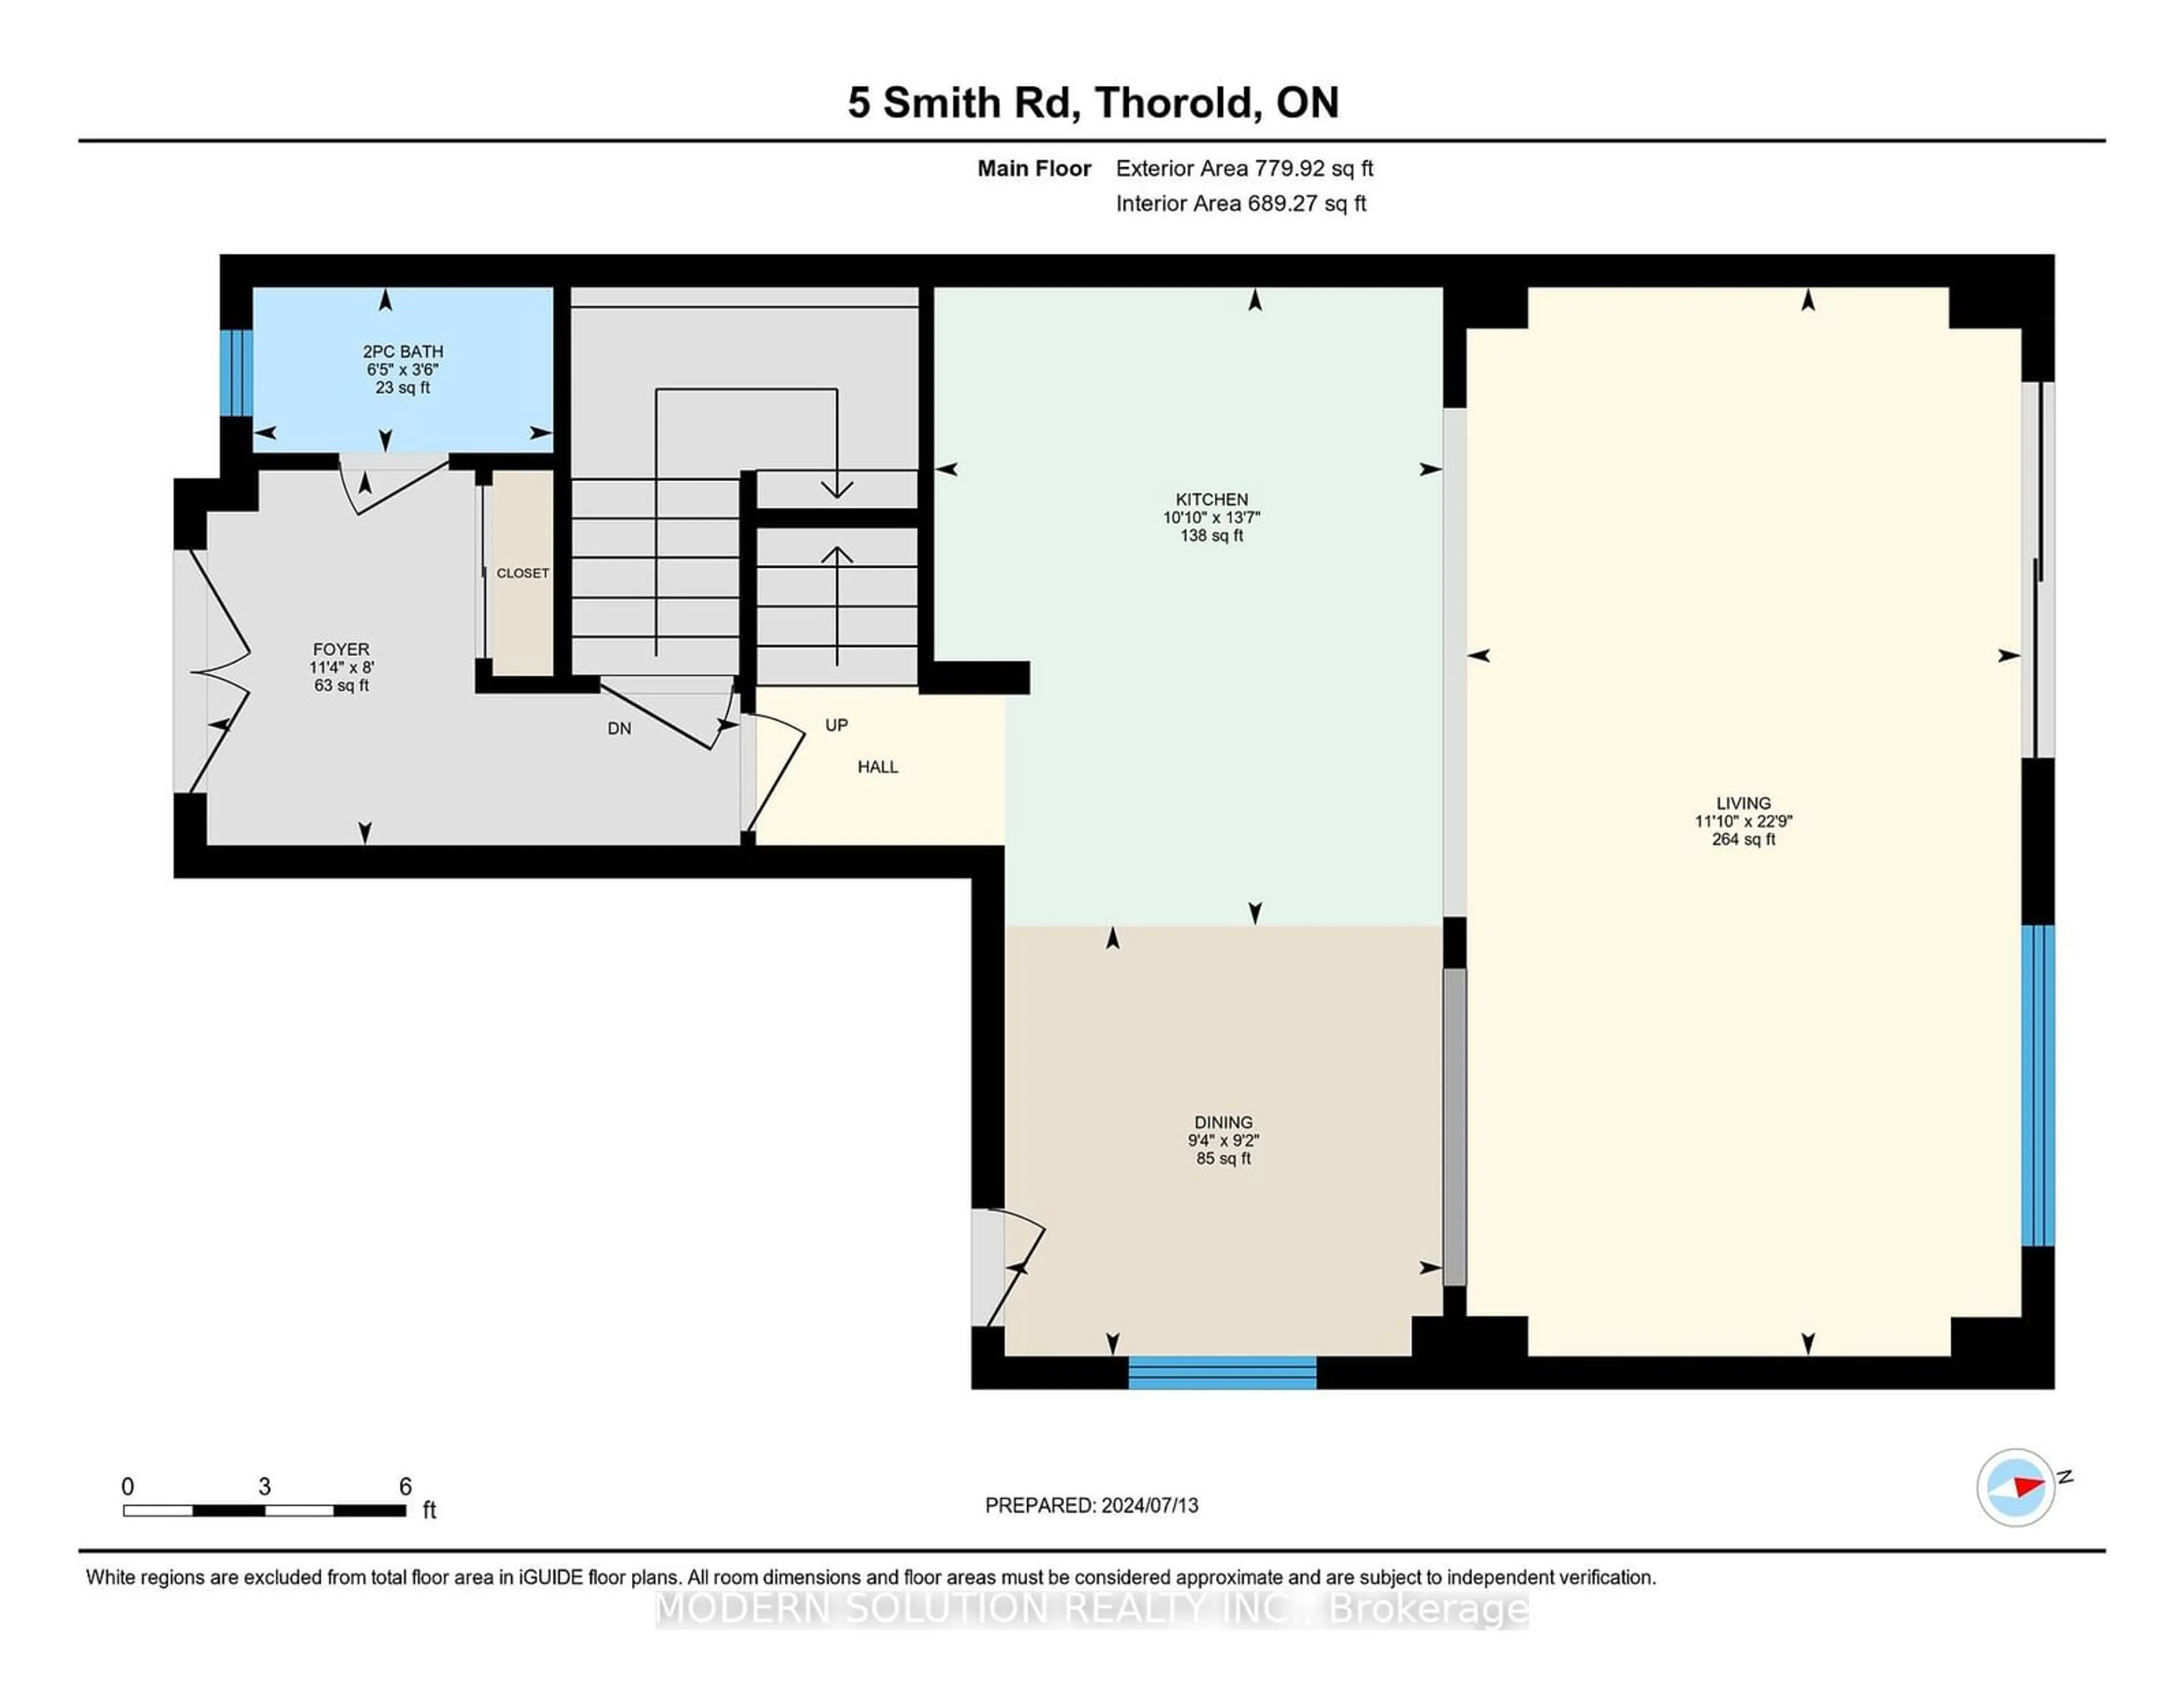 Floor plan for 5 Smith Rd, Thorold Ontario L3B 0E9